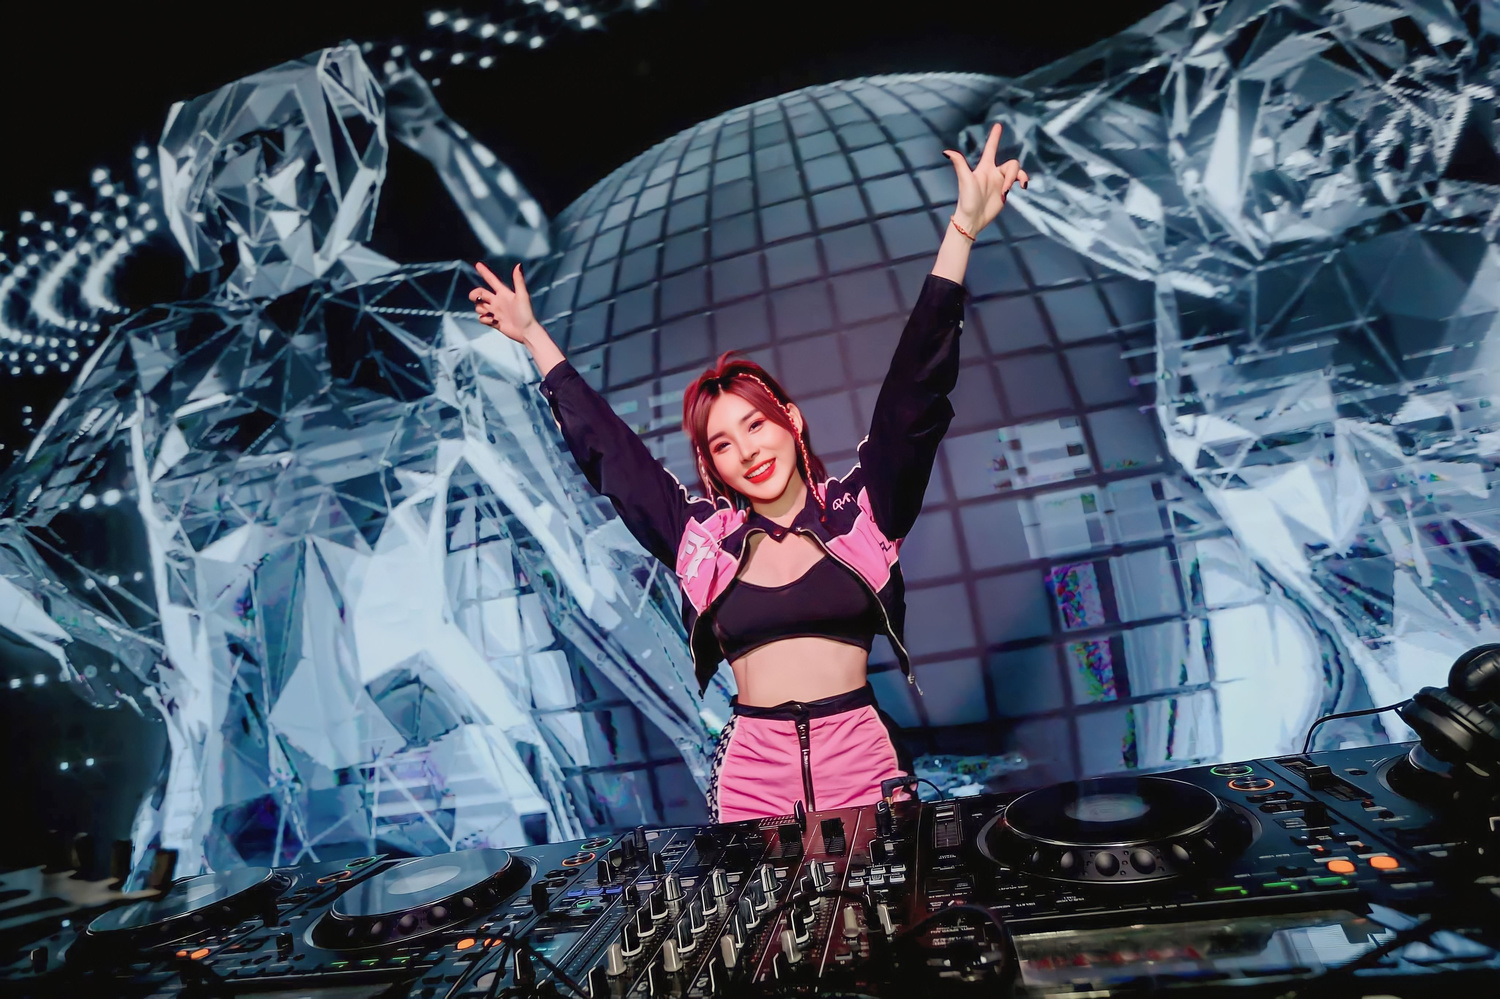 DJ T Tina xuất hiện trên tạp chí Kpop Times của Hàn Quốc cùng loạt idol Kpop - ảnh 1